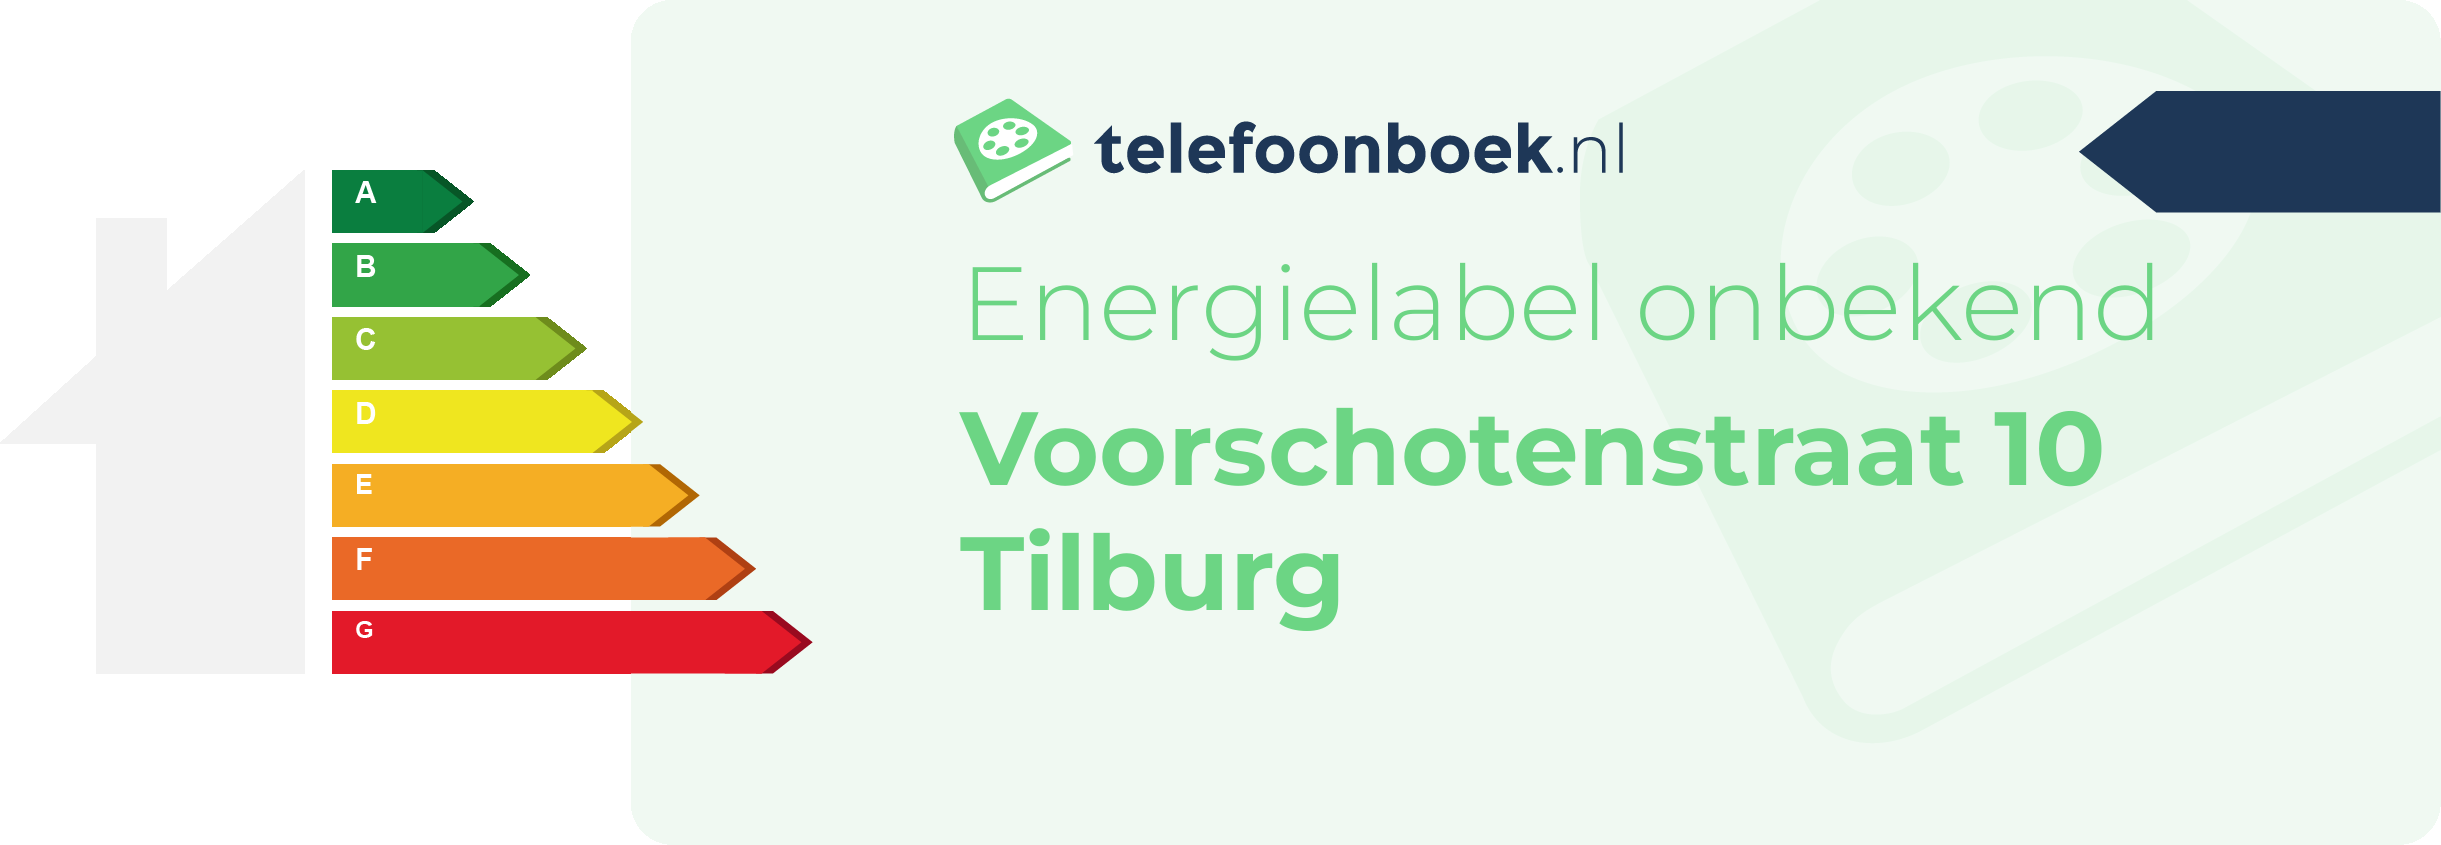 Energielabel Voorschotenstraat 10 Tilburg